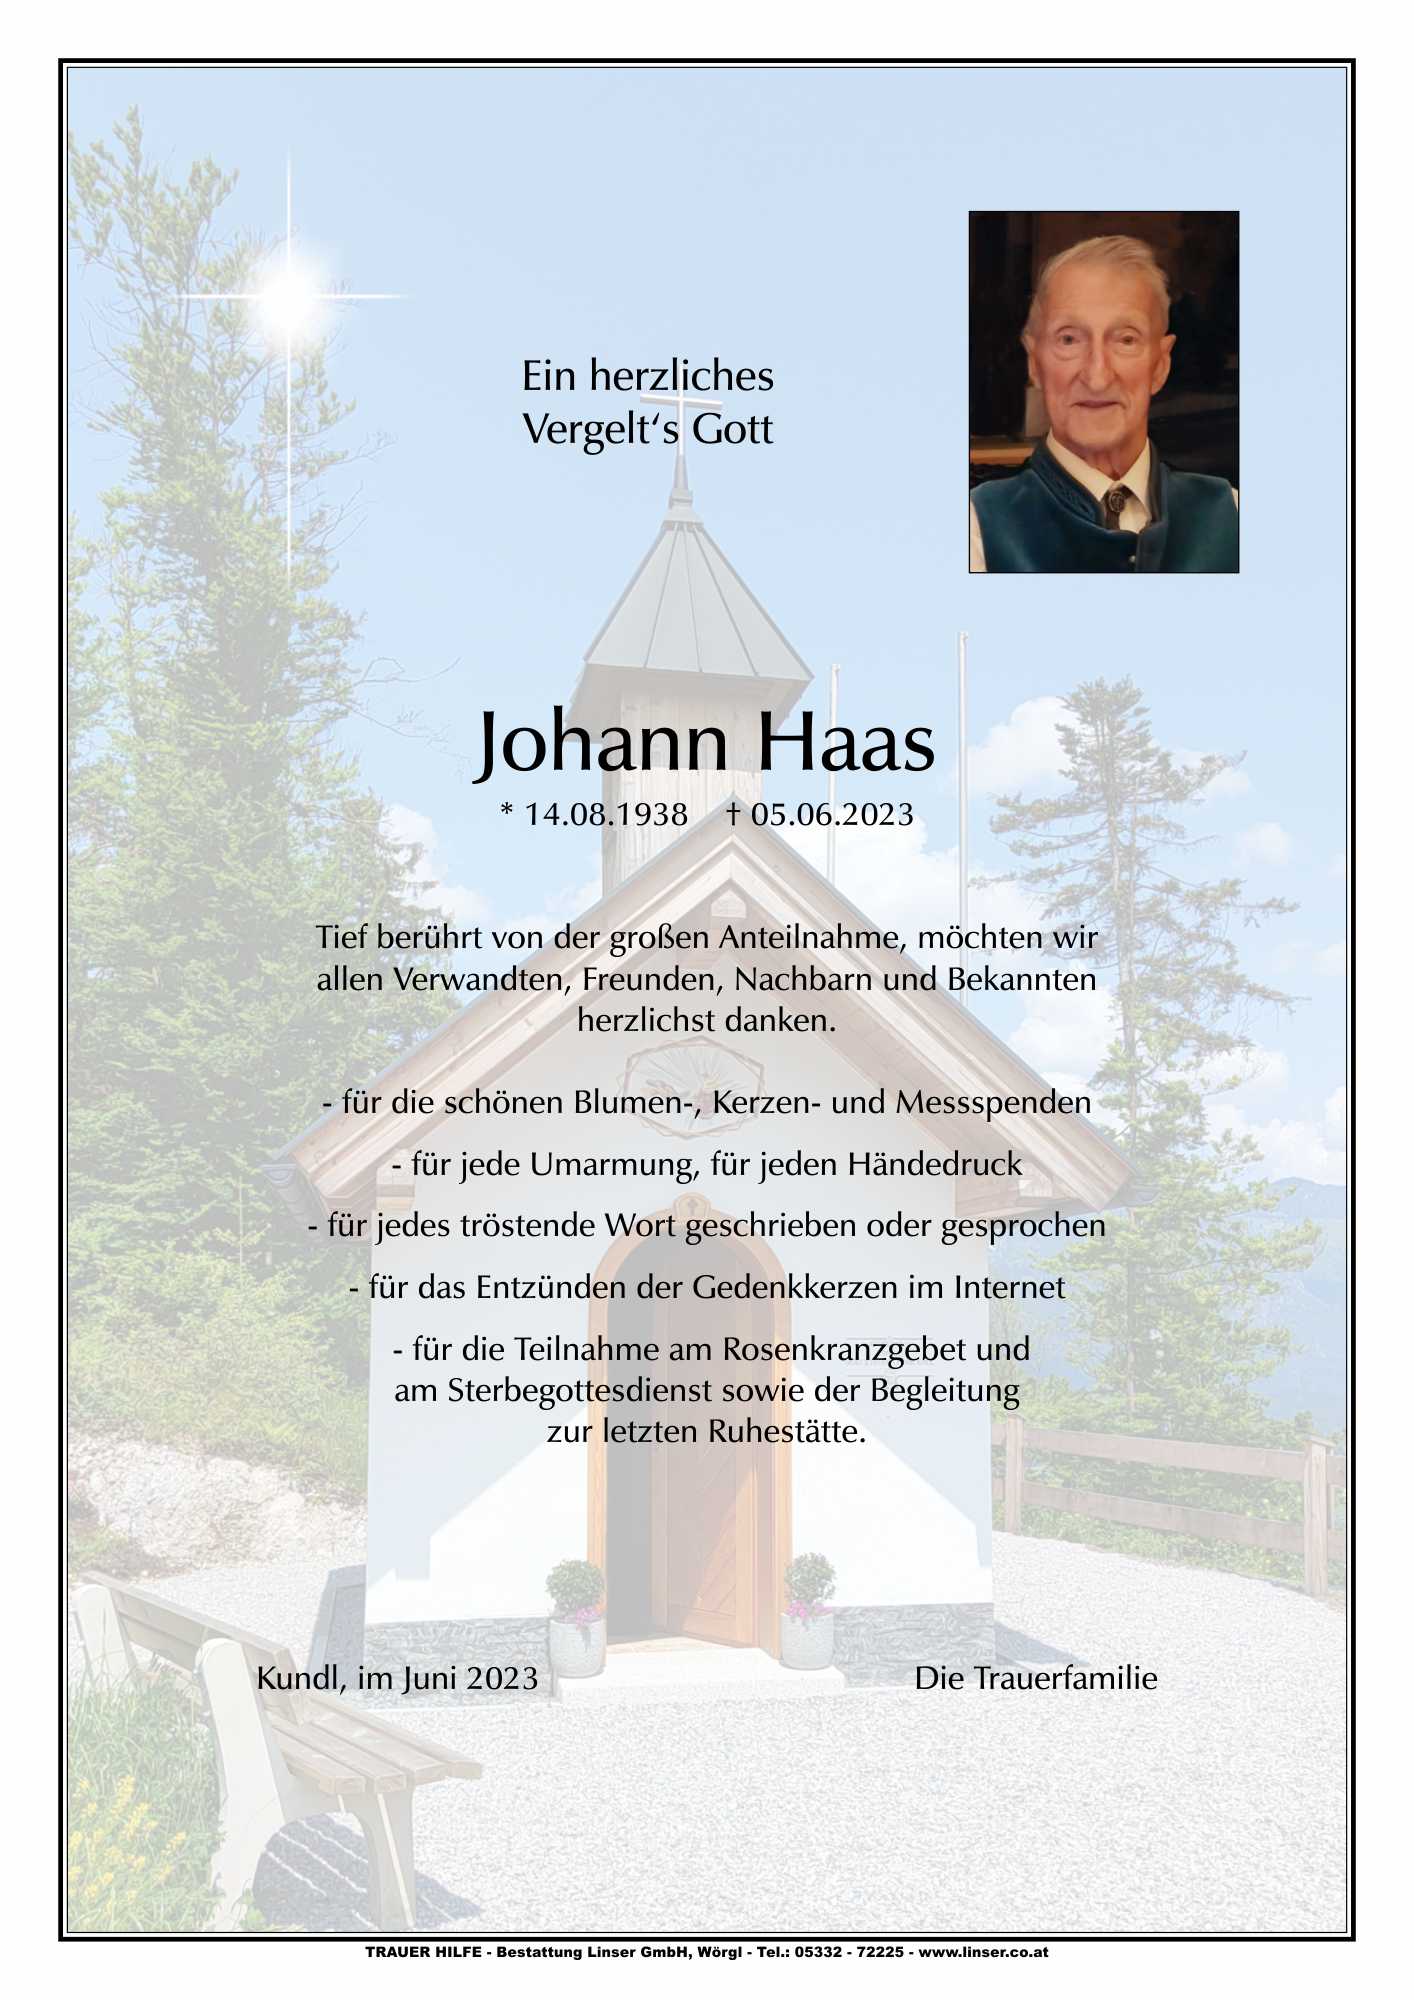 Johann Haas